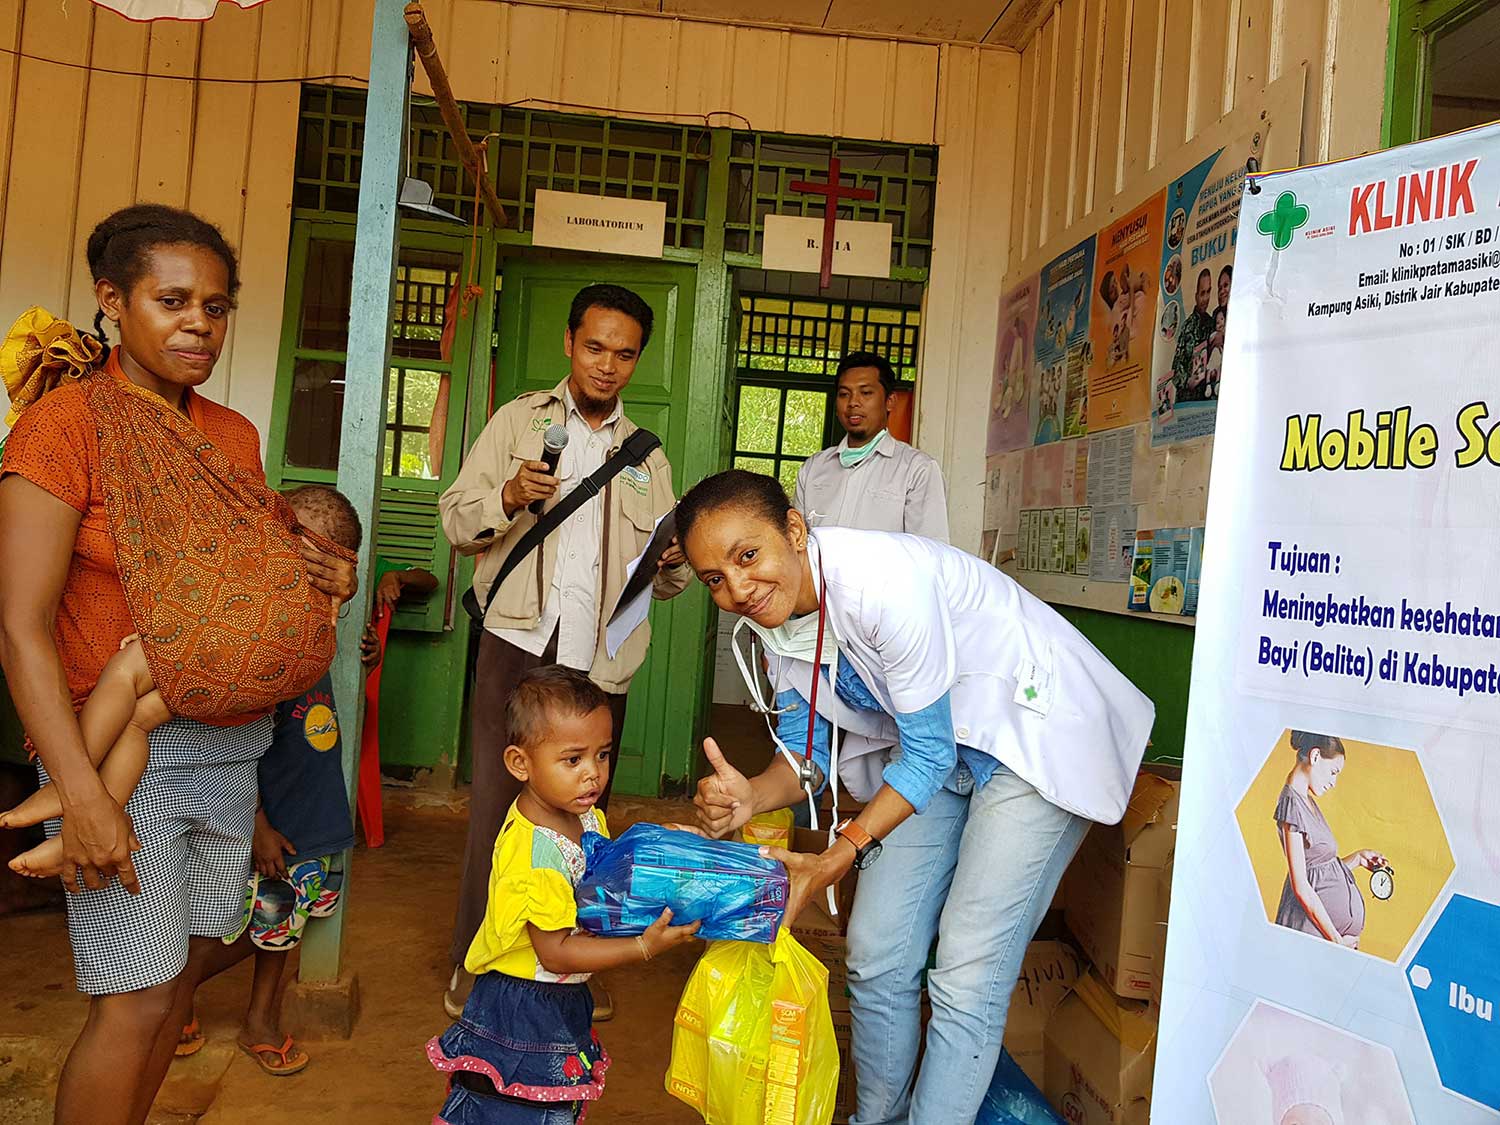 program layanan mobile service klinik asiki oleh korindo group untuk masyarakat pedalaman papua meningkatkan kesehatan nurul sufitri mom lifestyle blogger review